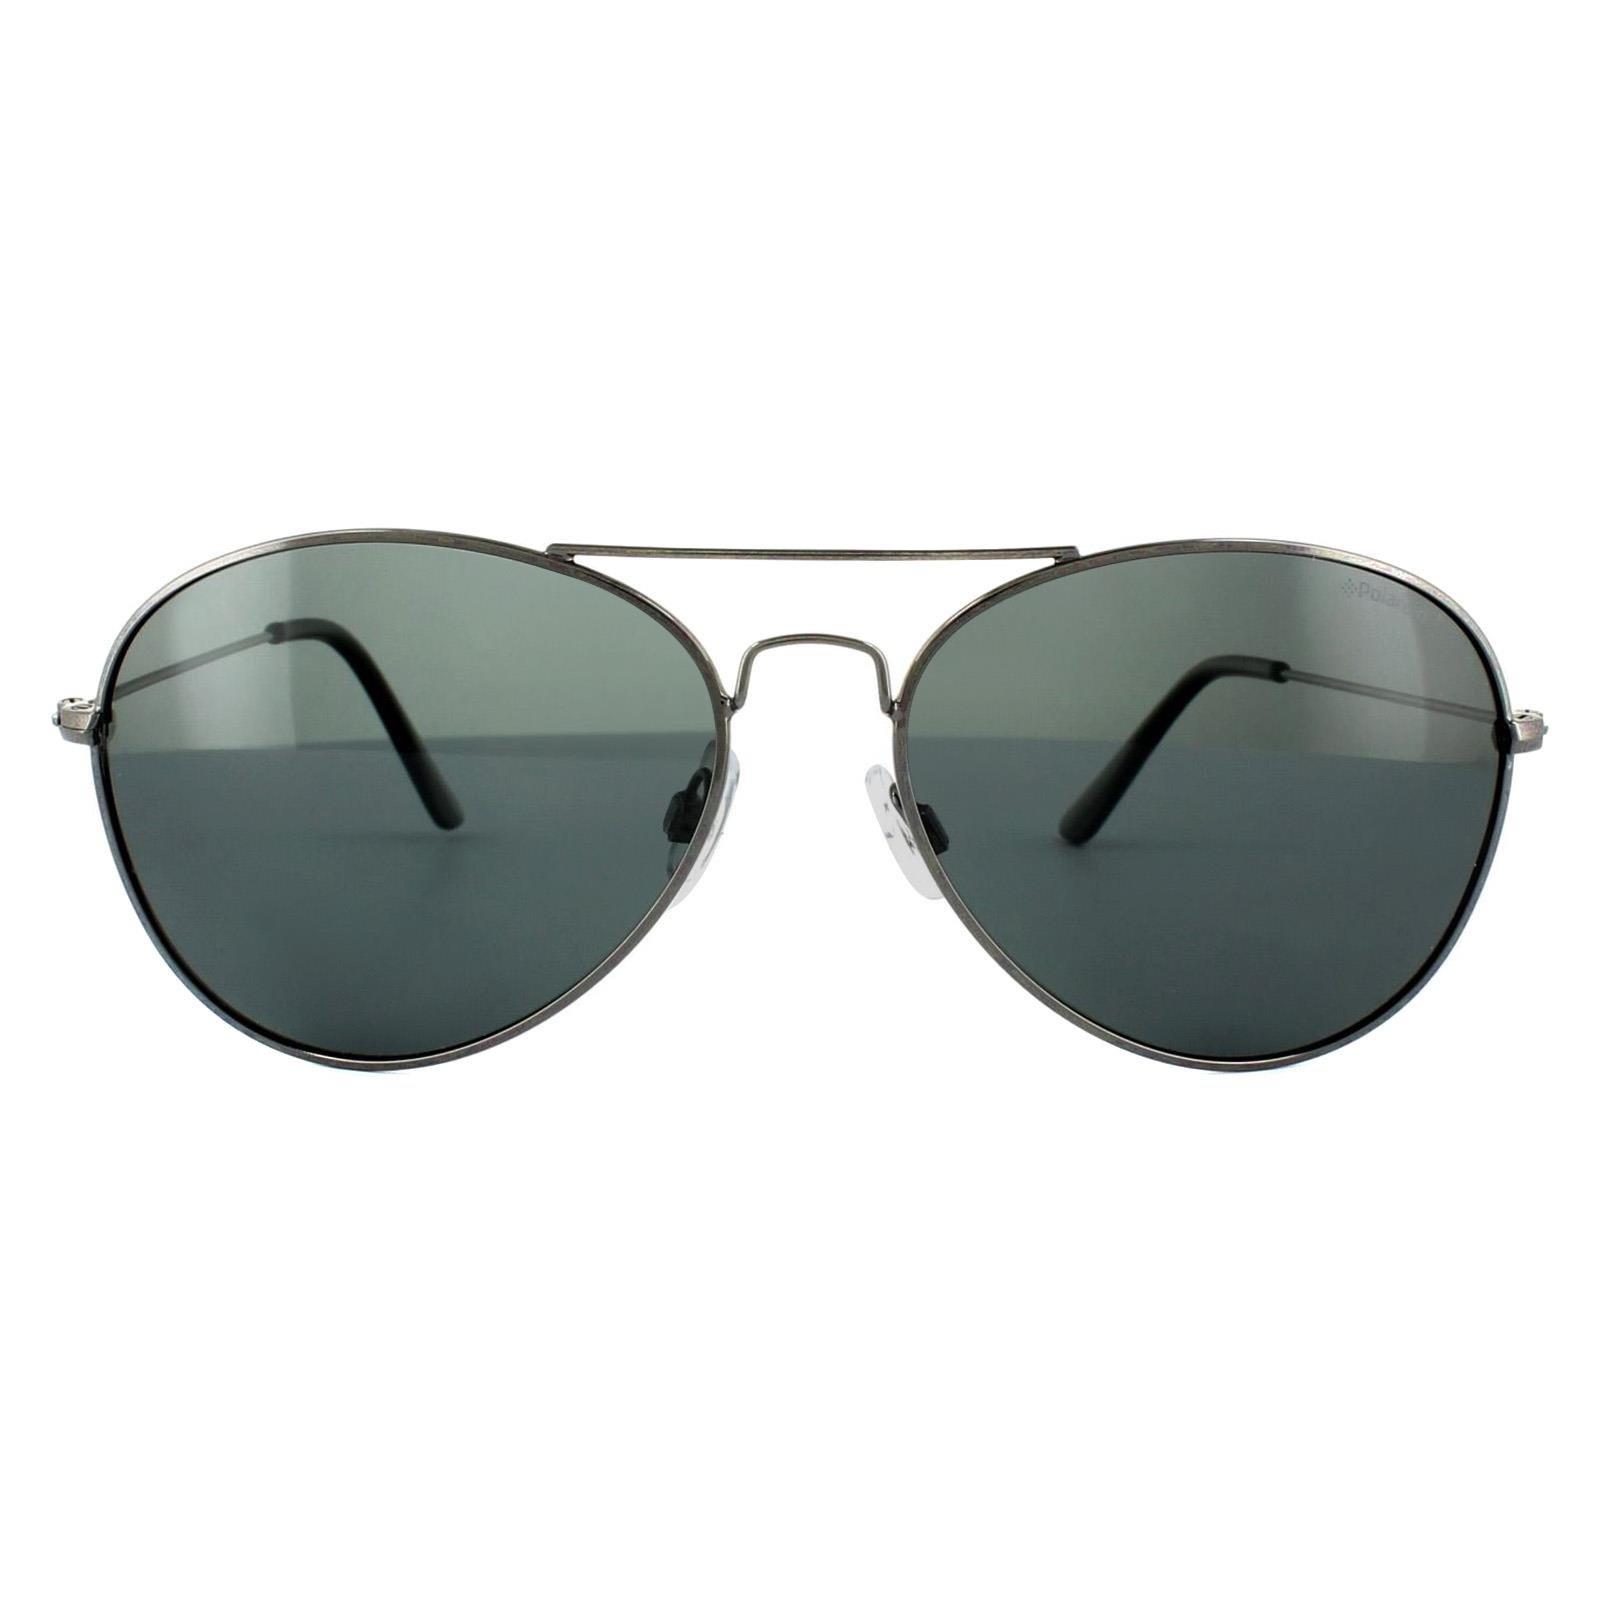 Поляризованные солнцезащитные очки Aviator Gunmetal серо-синего цвета Polaroid, серый